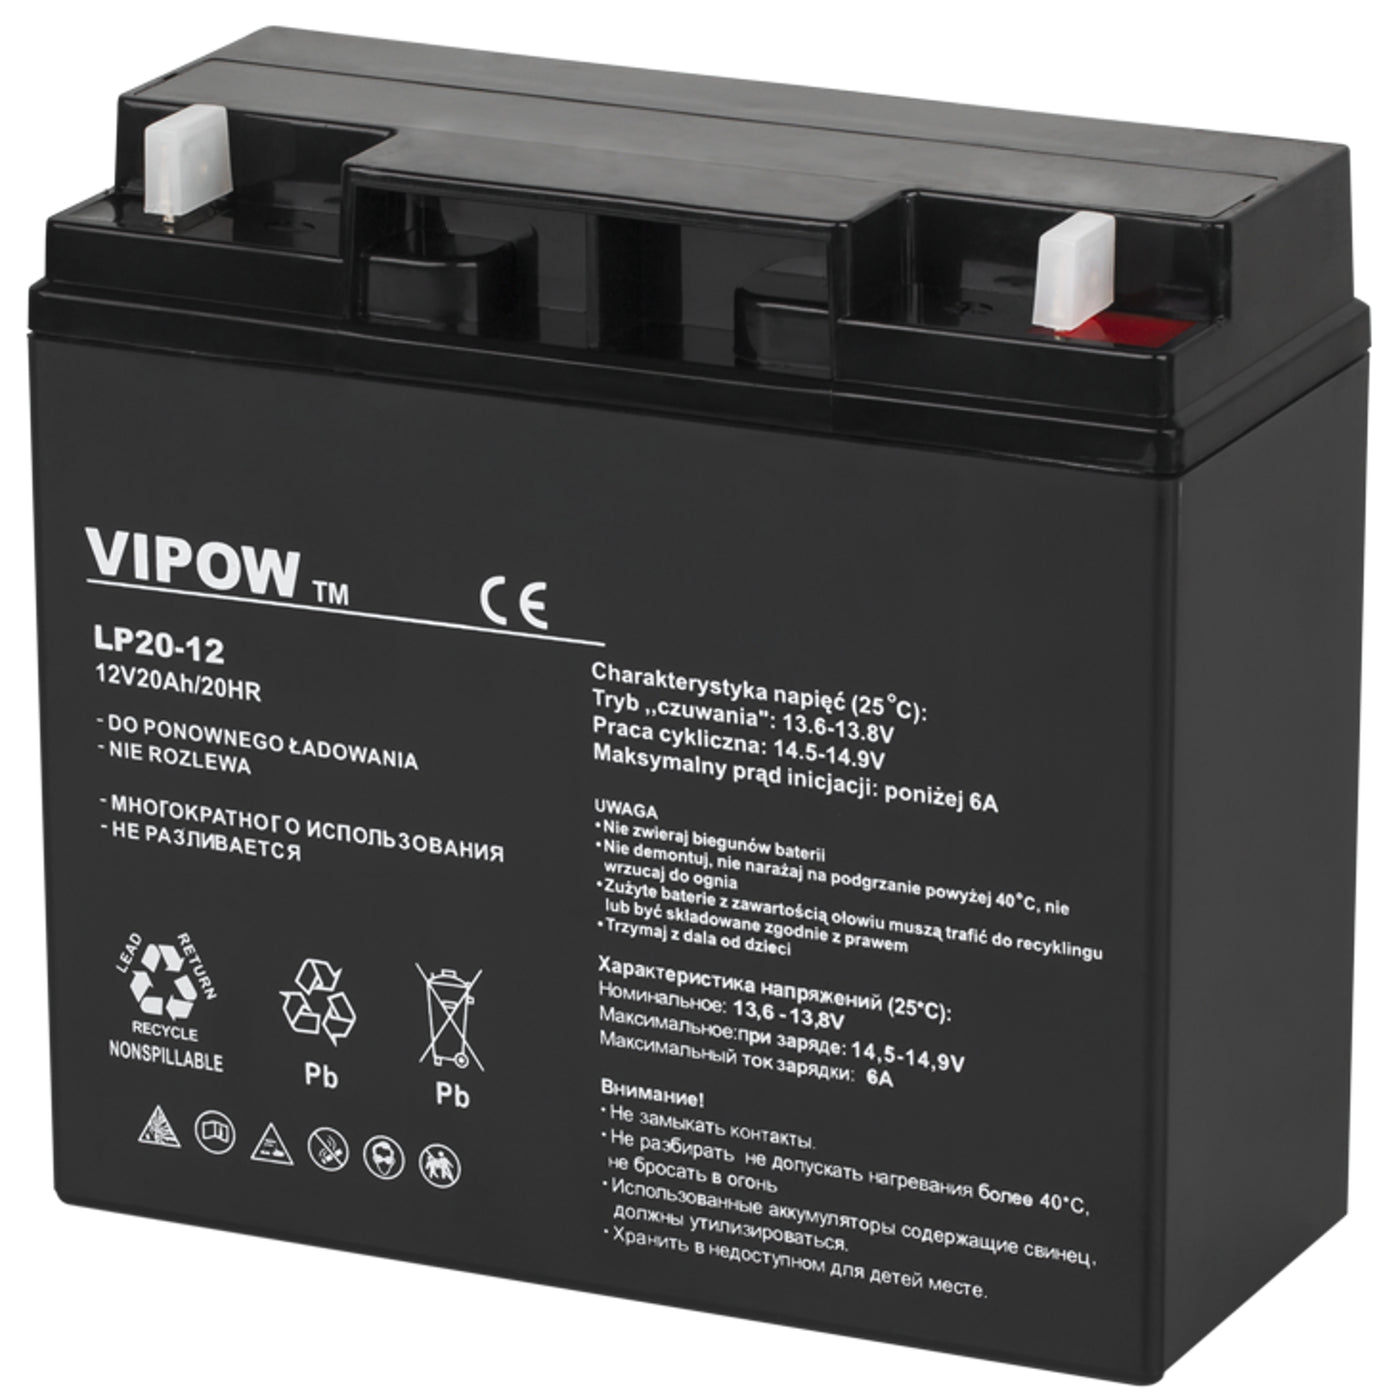 Bezobsługowy akumulator żelowy Vipow 12V 20Ah wymiary 181 x 77 x 167 mm